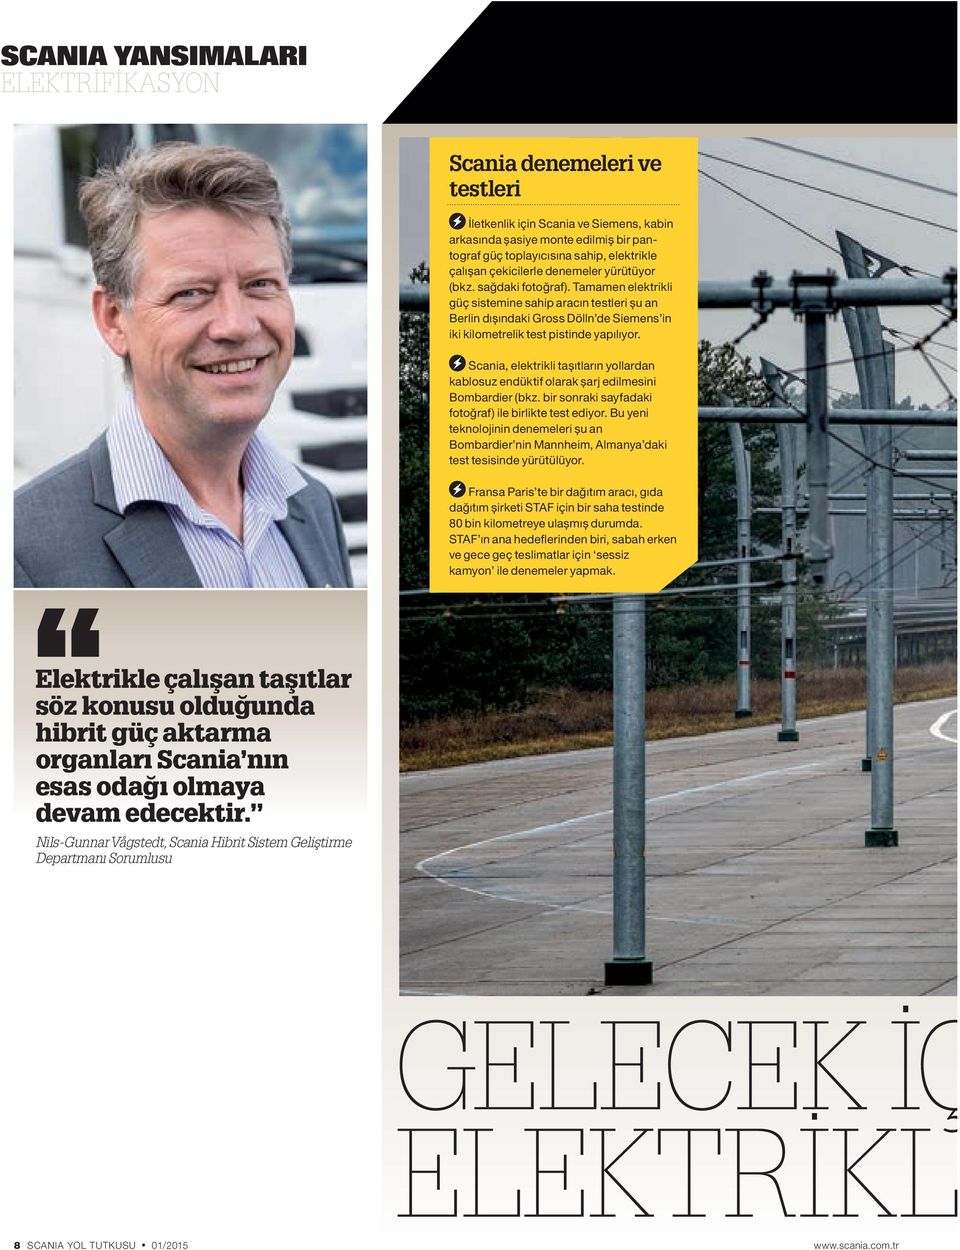 Tamamen elektrikli güç sistemine sahip aracın testleri șu an Berlin dıșındaki Gross Dölln de Siemens in iki kilometrelik test pistinde yapılıyor.